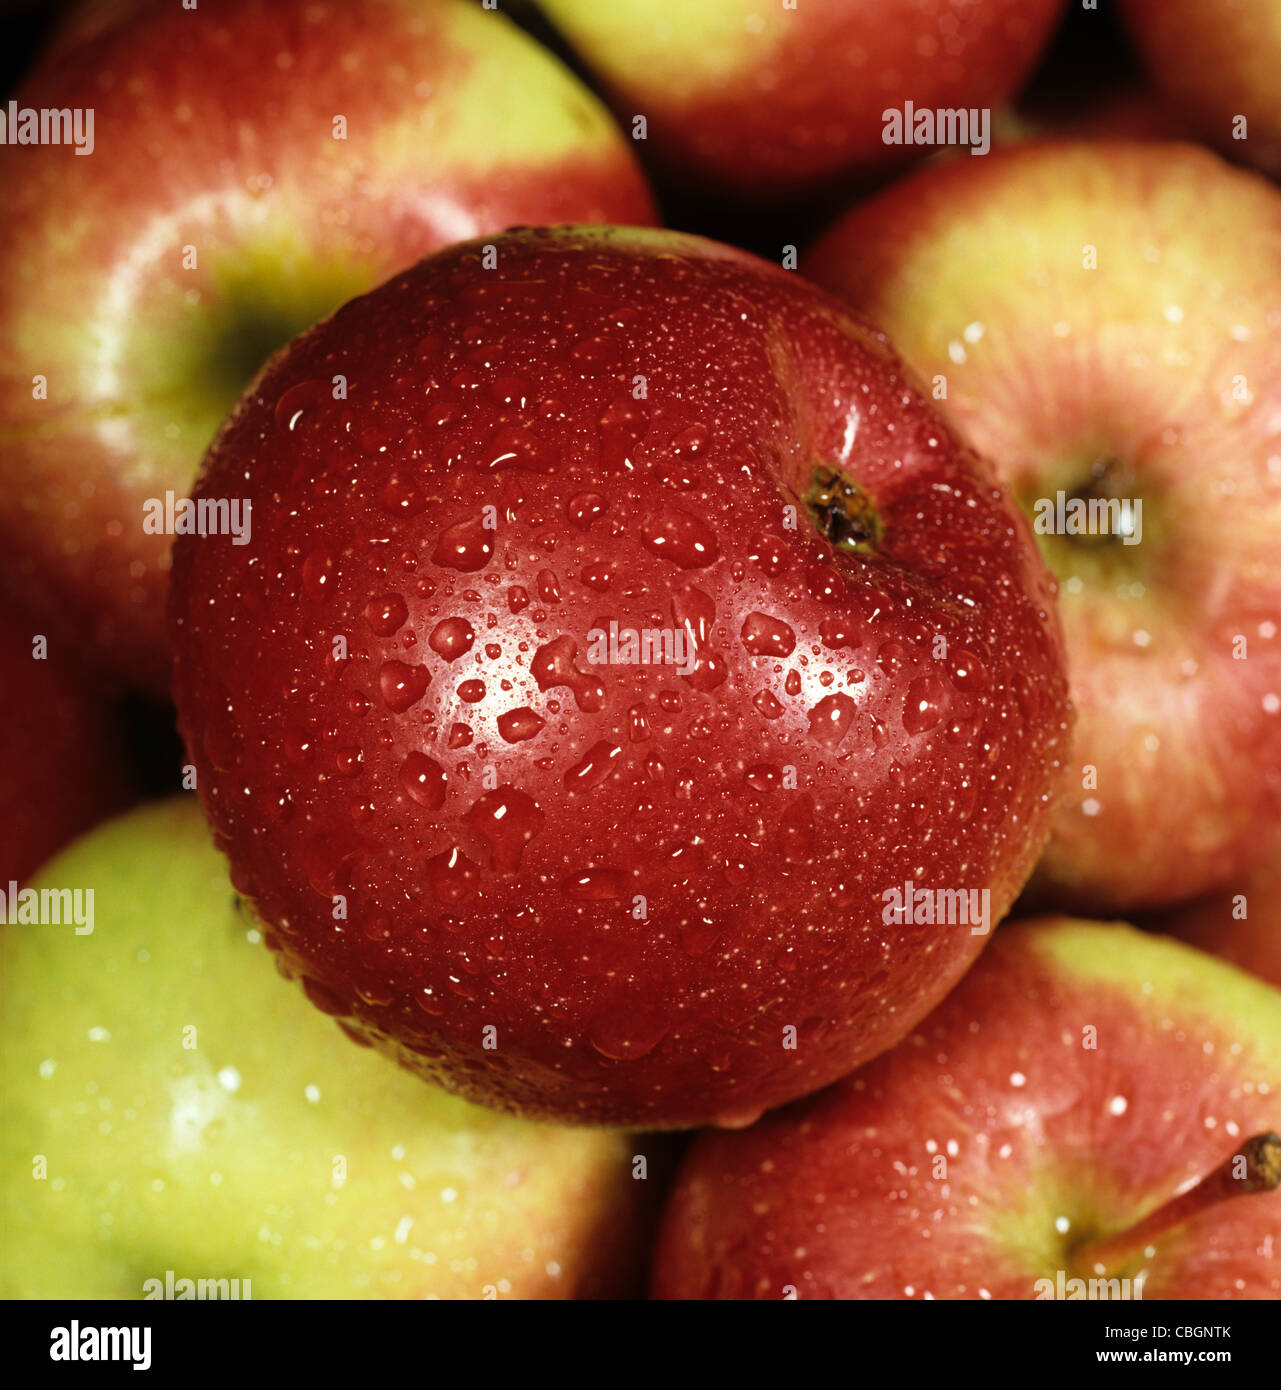 Apple, un canadiense de fruta variada, por ejemplo, tienda, con gotas de agua Foto de stock